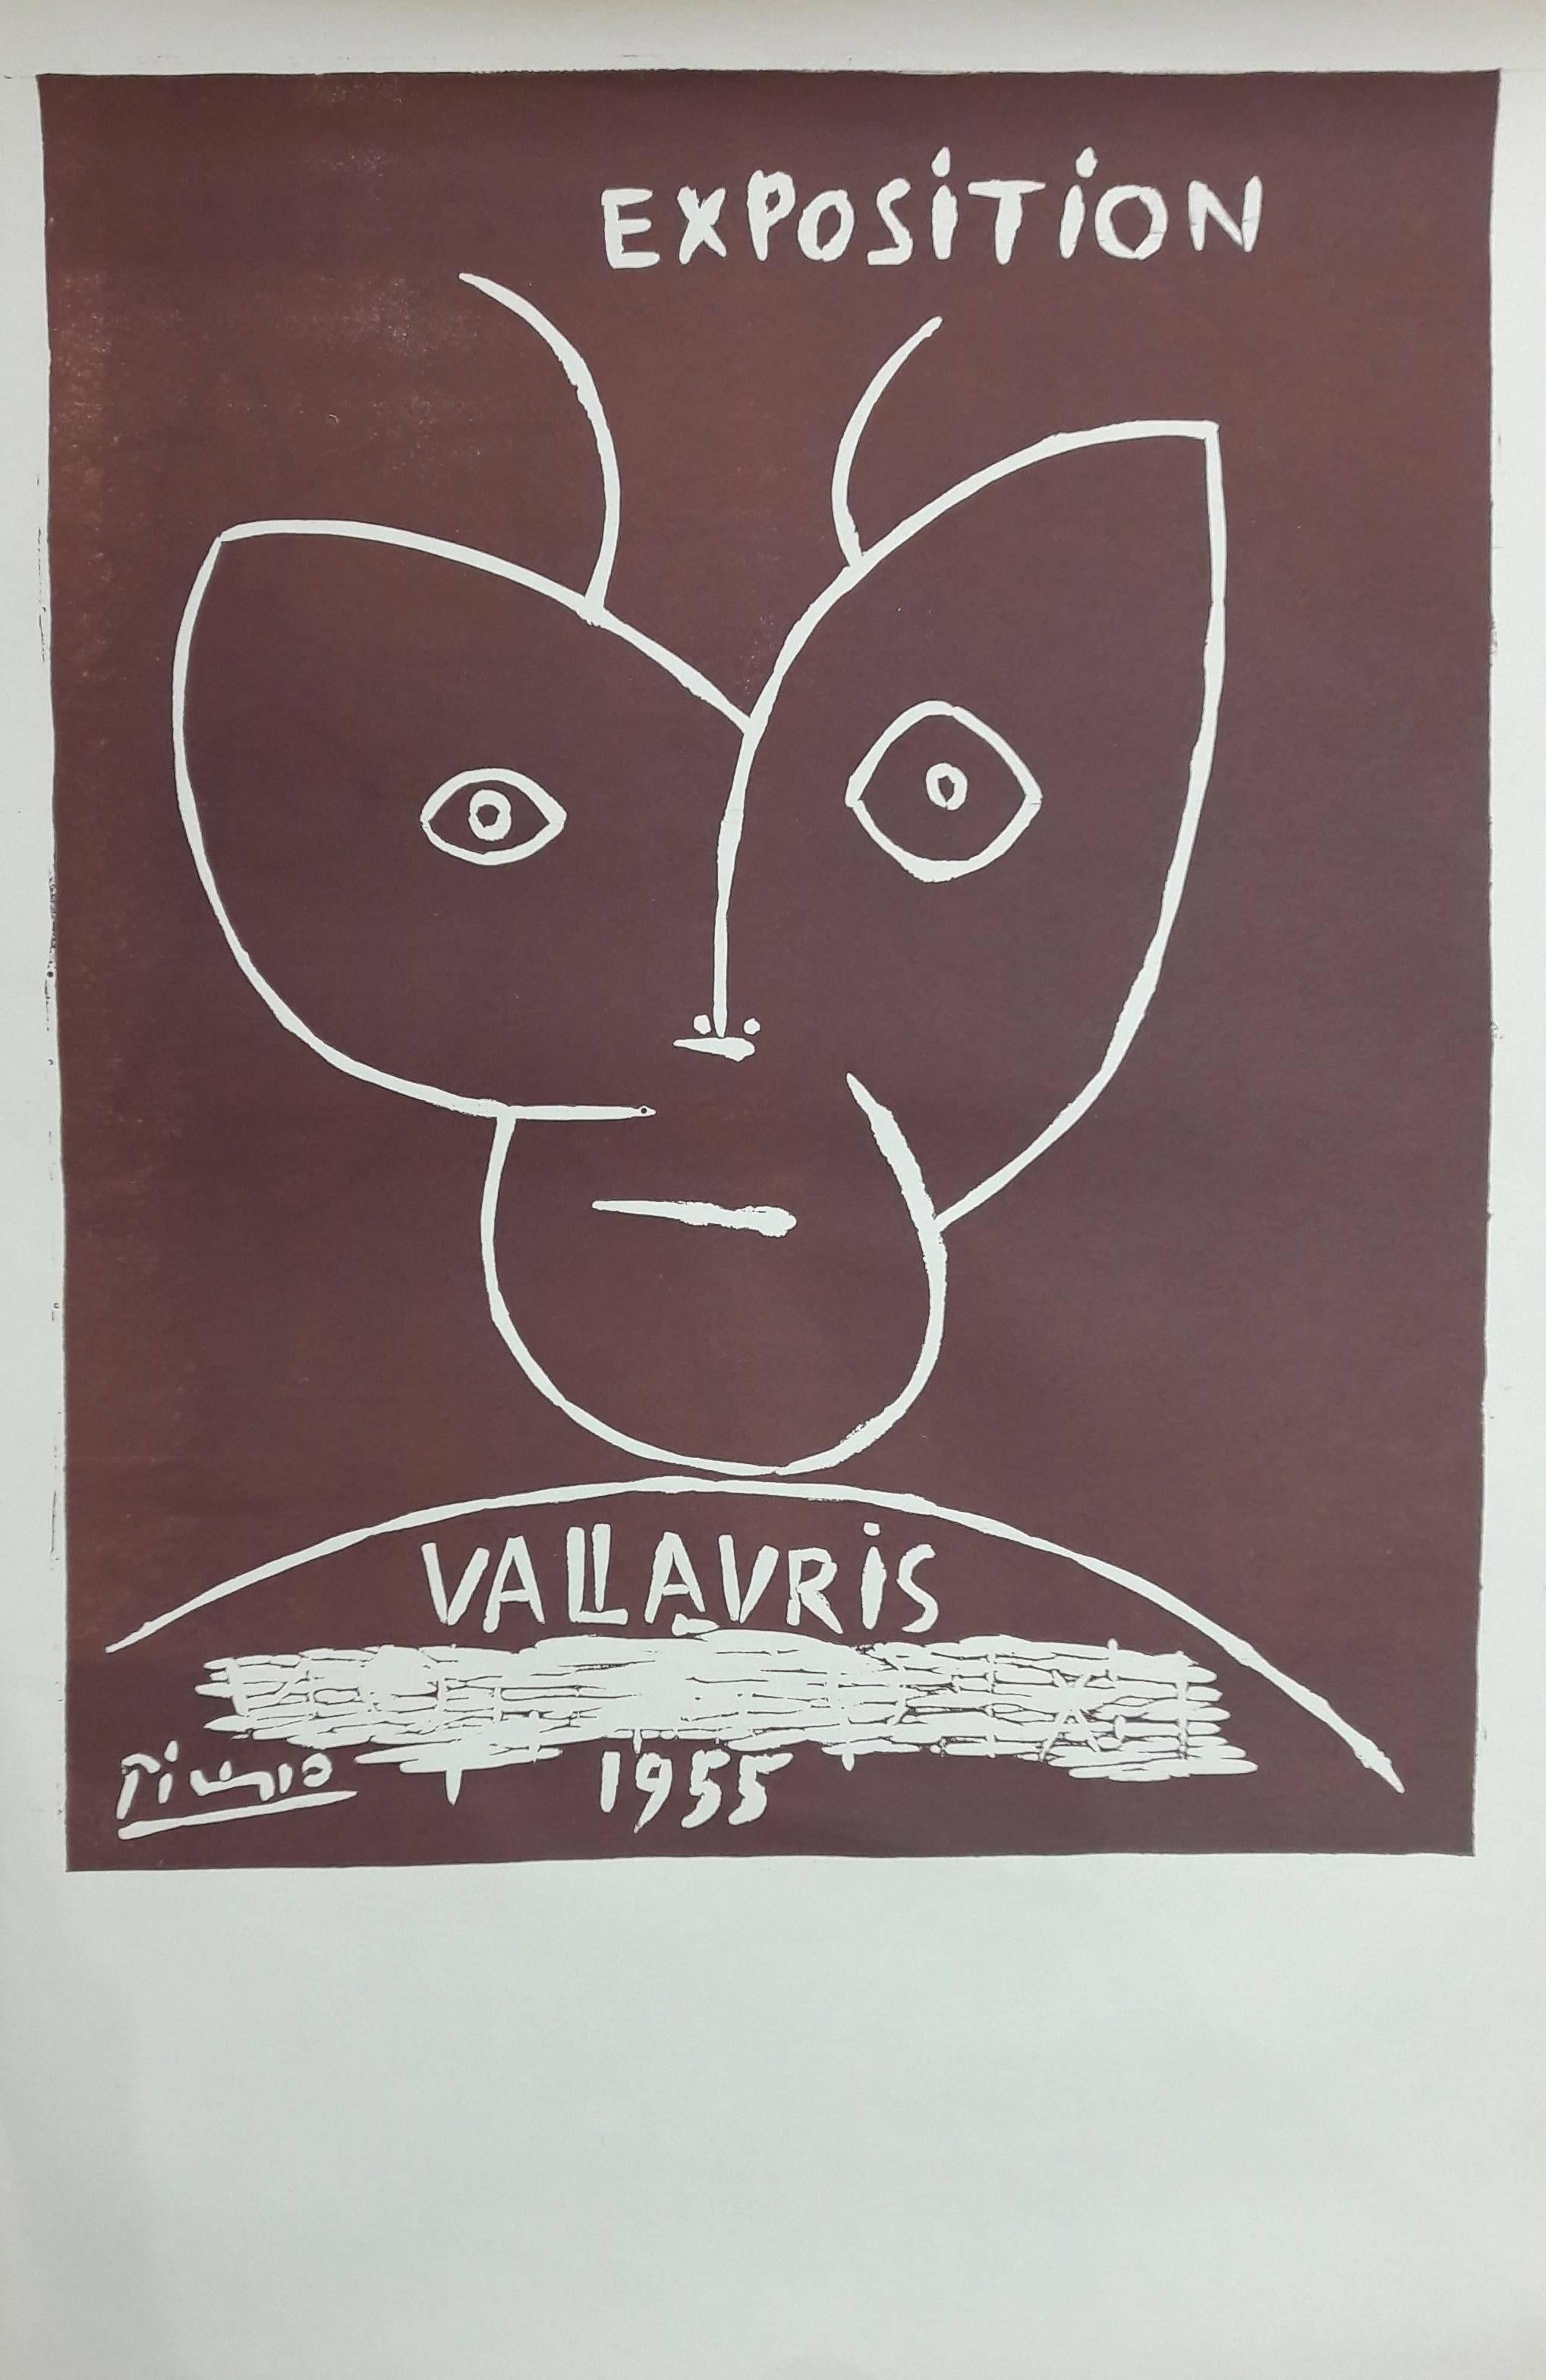 Pablo Picasso Portrait Print - Exposition Vallauris 1955 - Original Linocut